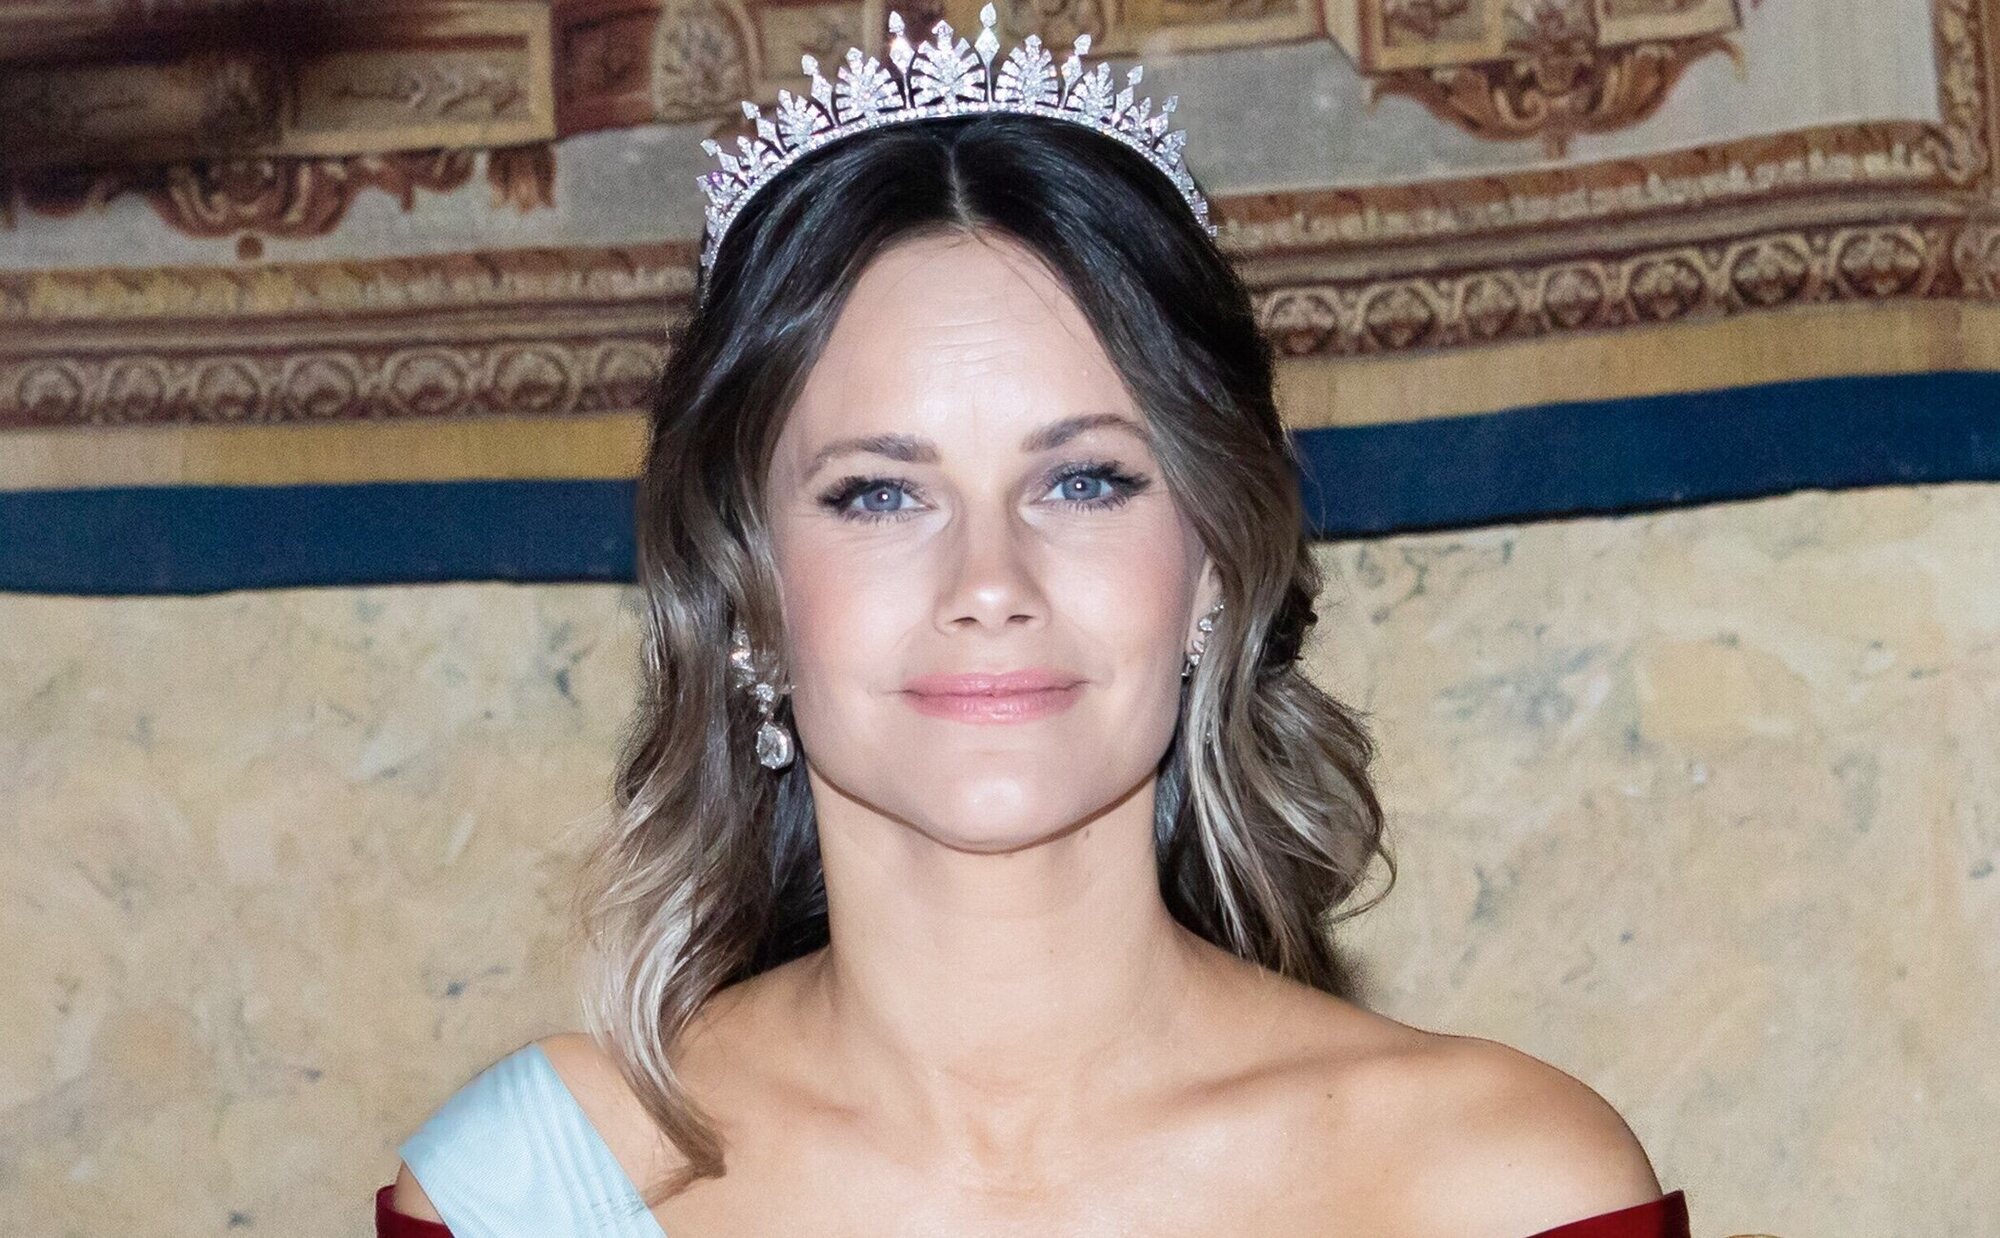 La noche de gala de la Familia Real Sueca por los Nobel 2023: las tiaras del joyero real, la multiusos y un vestido con guiño